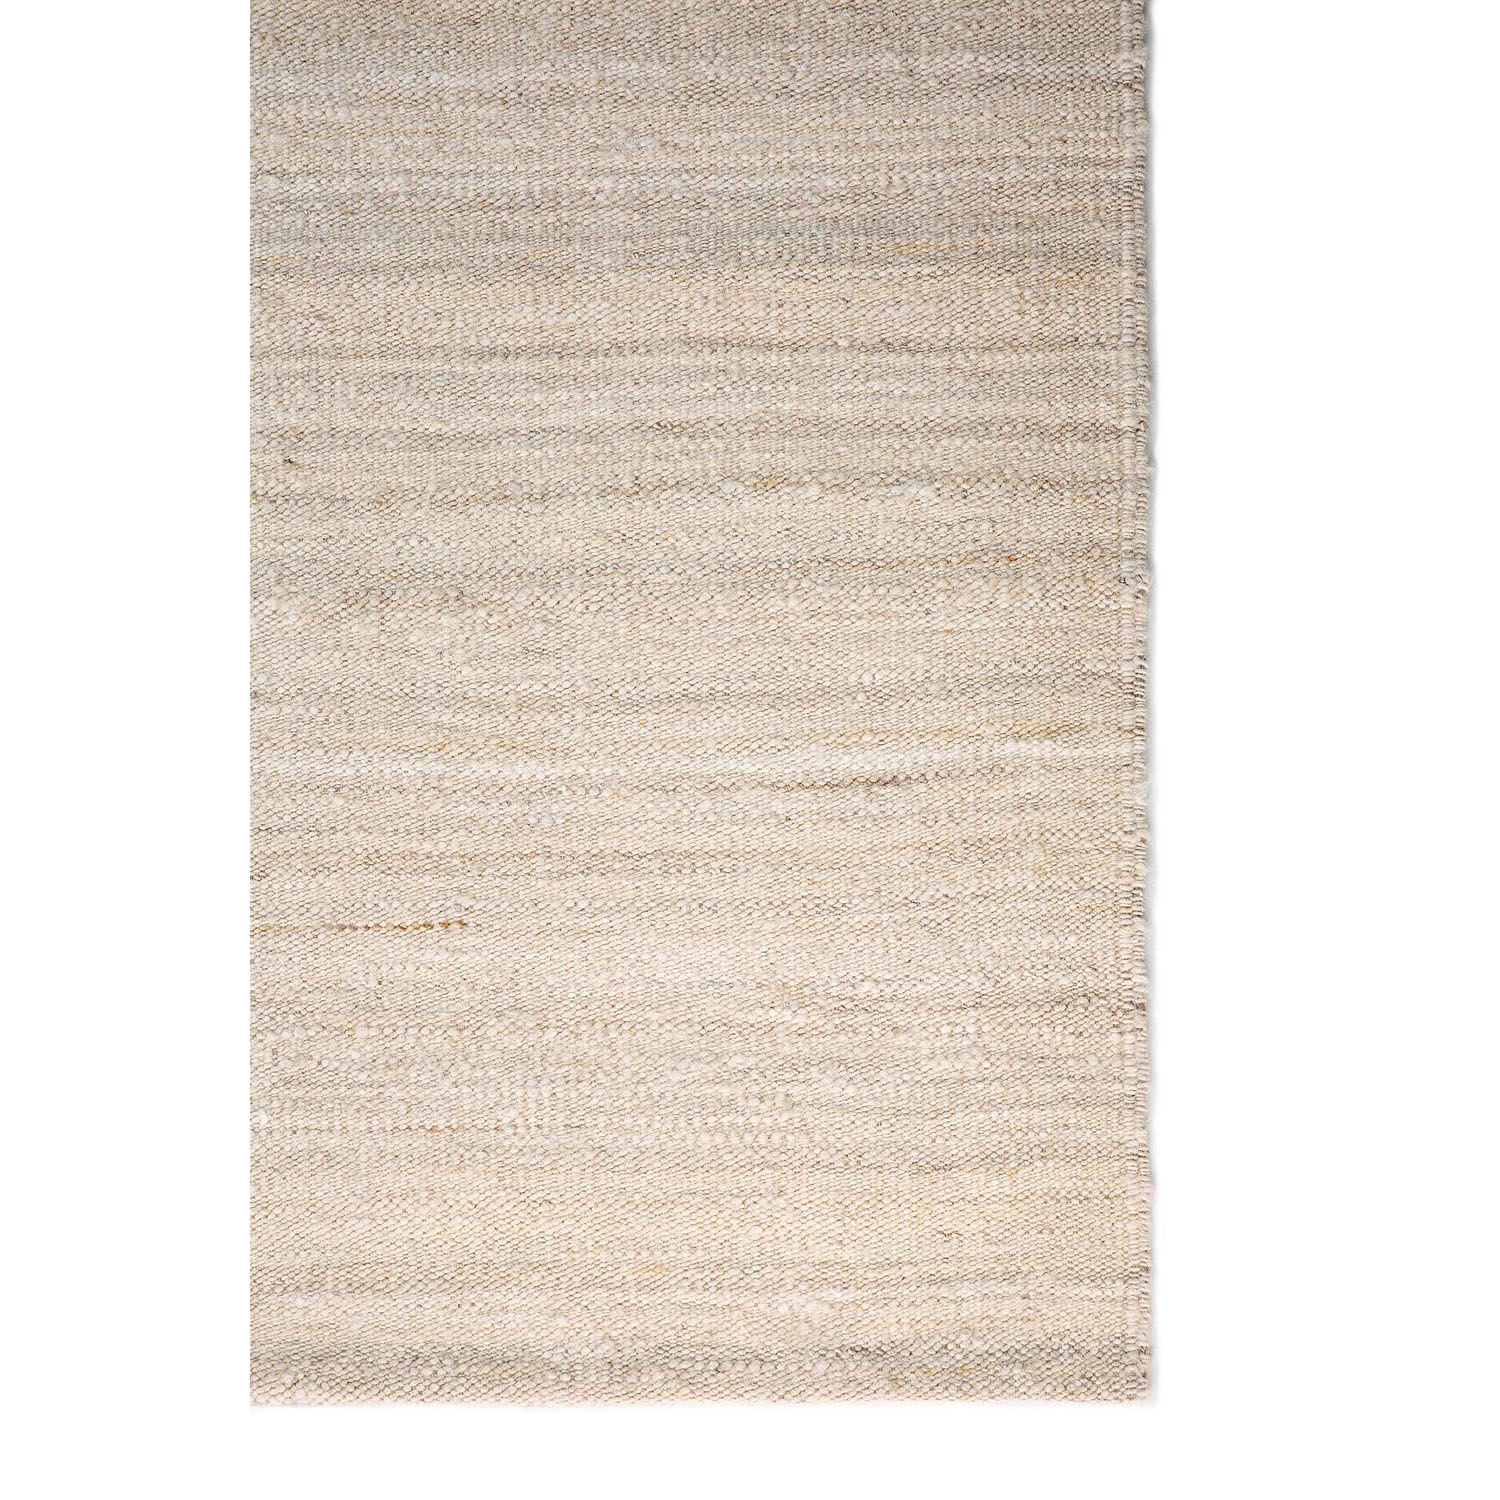 Nomad Kilim-Teppich Sand 100 % handgesponnene Wolle 21700